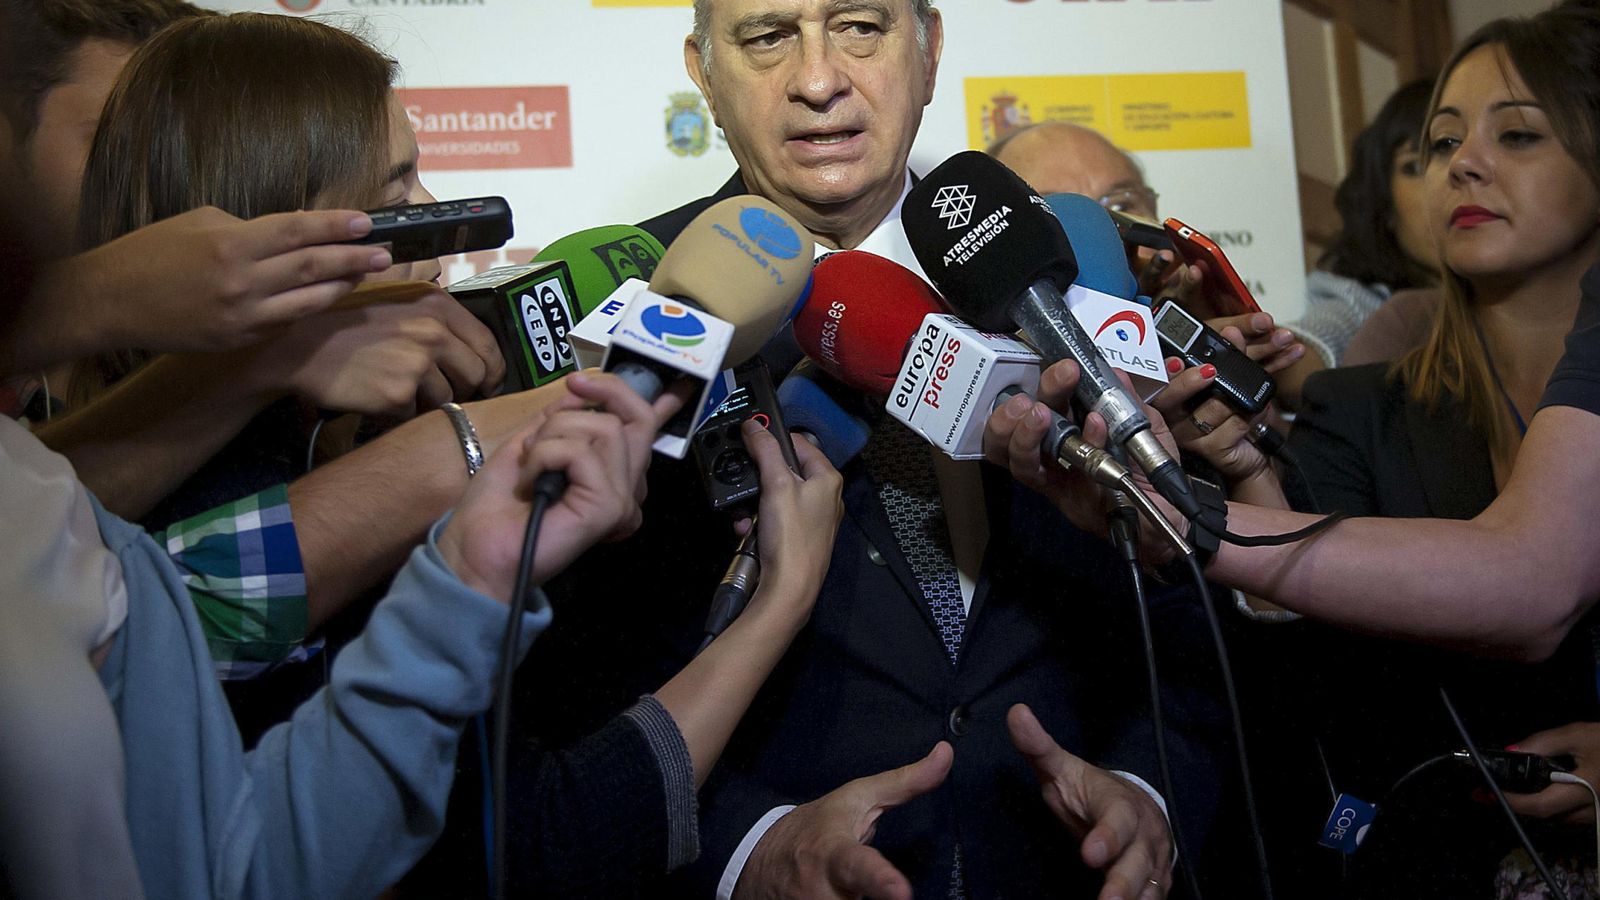 Foto: El ministro del Interior, Jorge Fernández Díaz. (EFE)